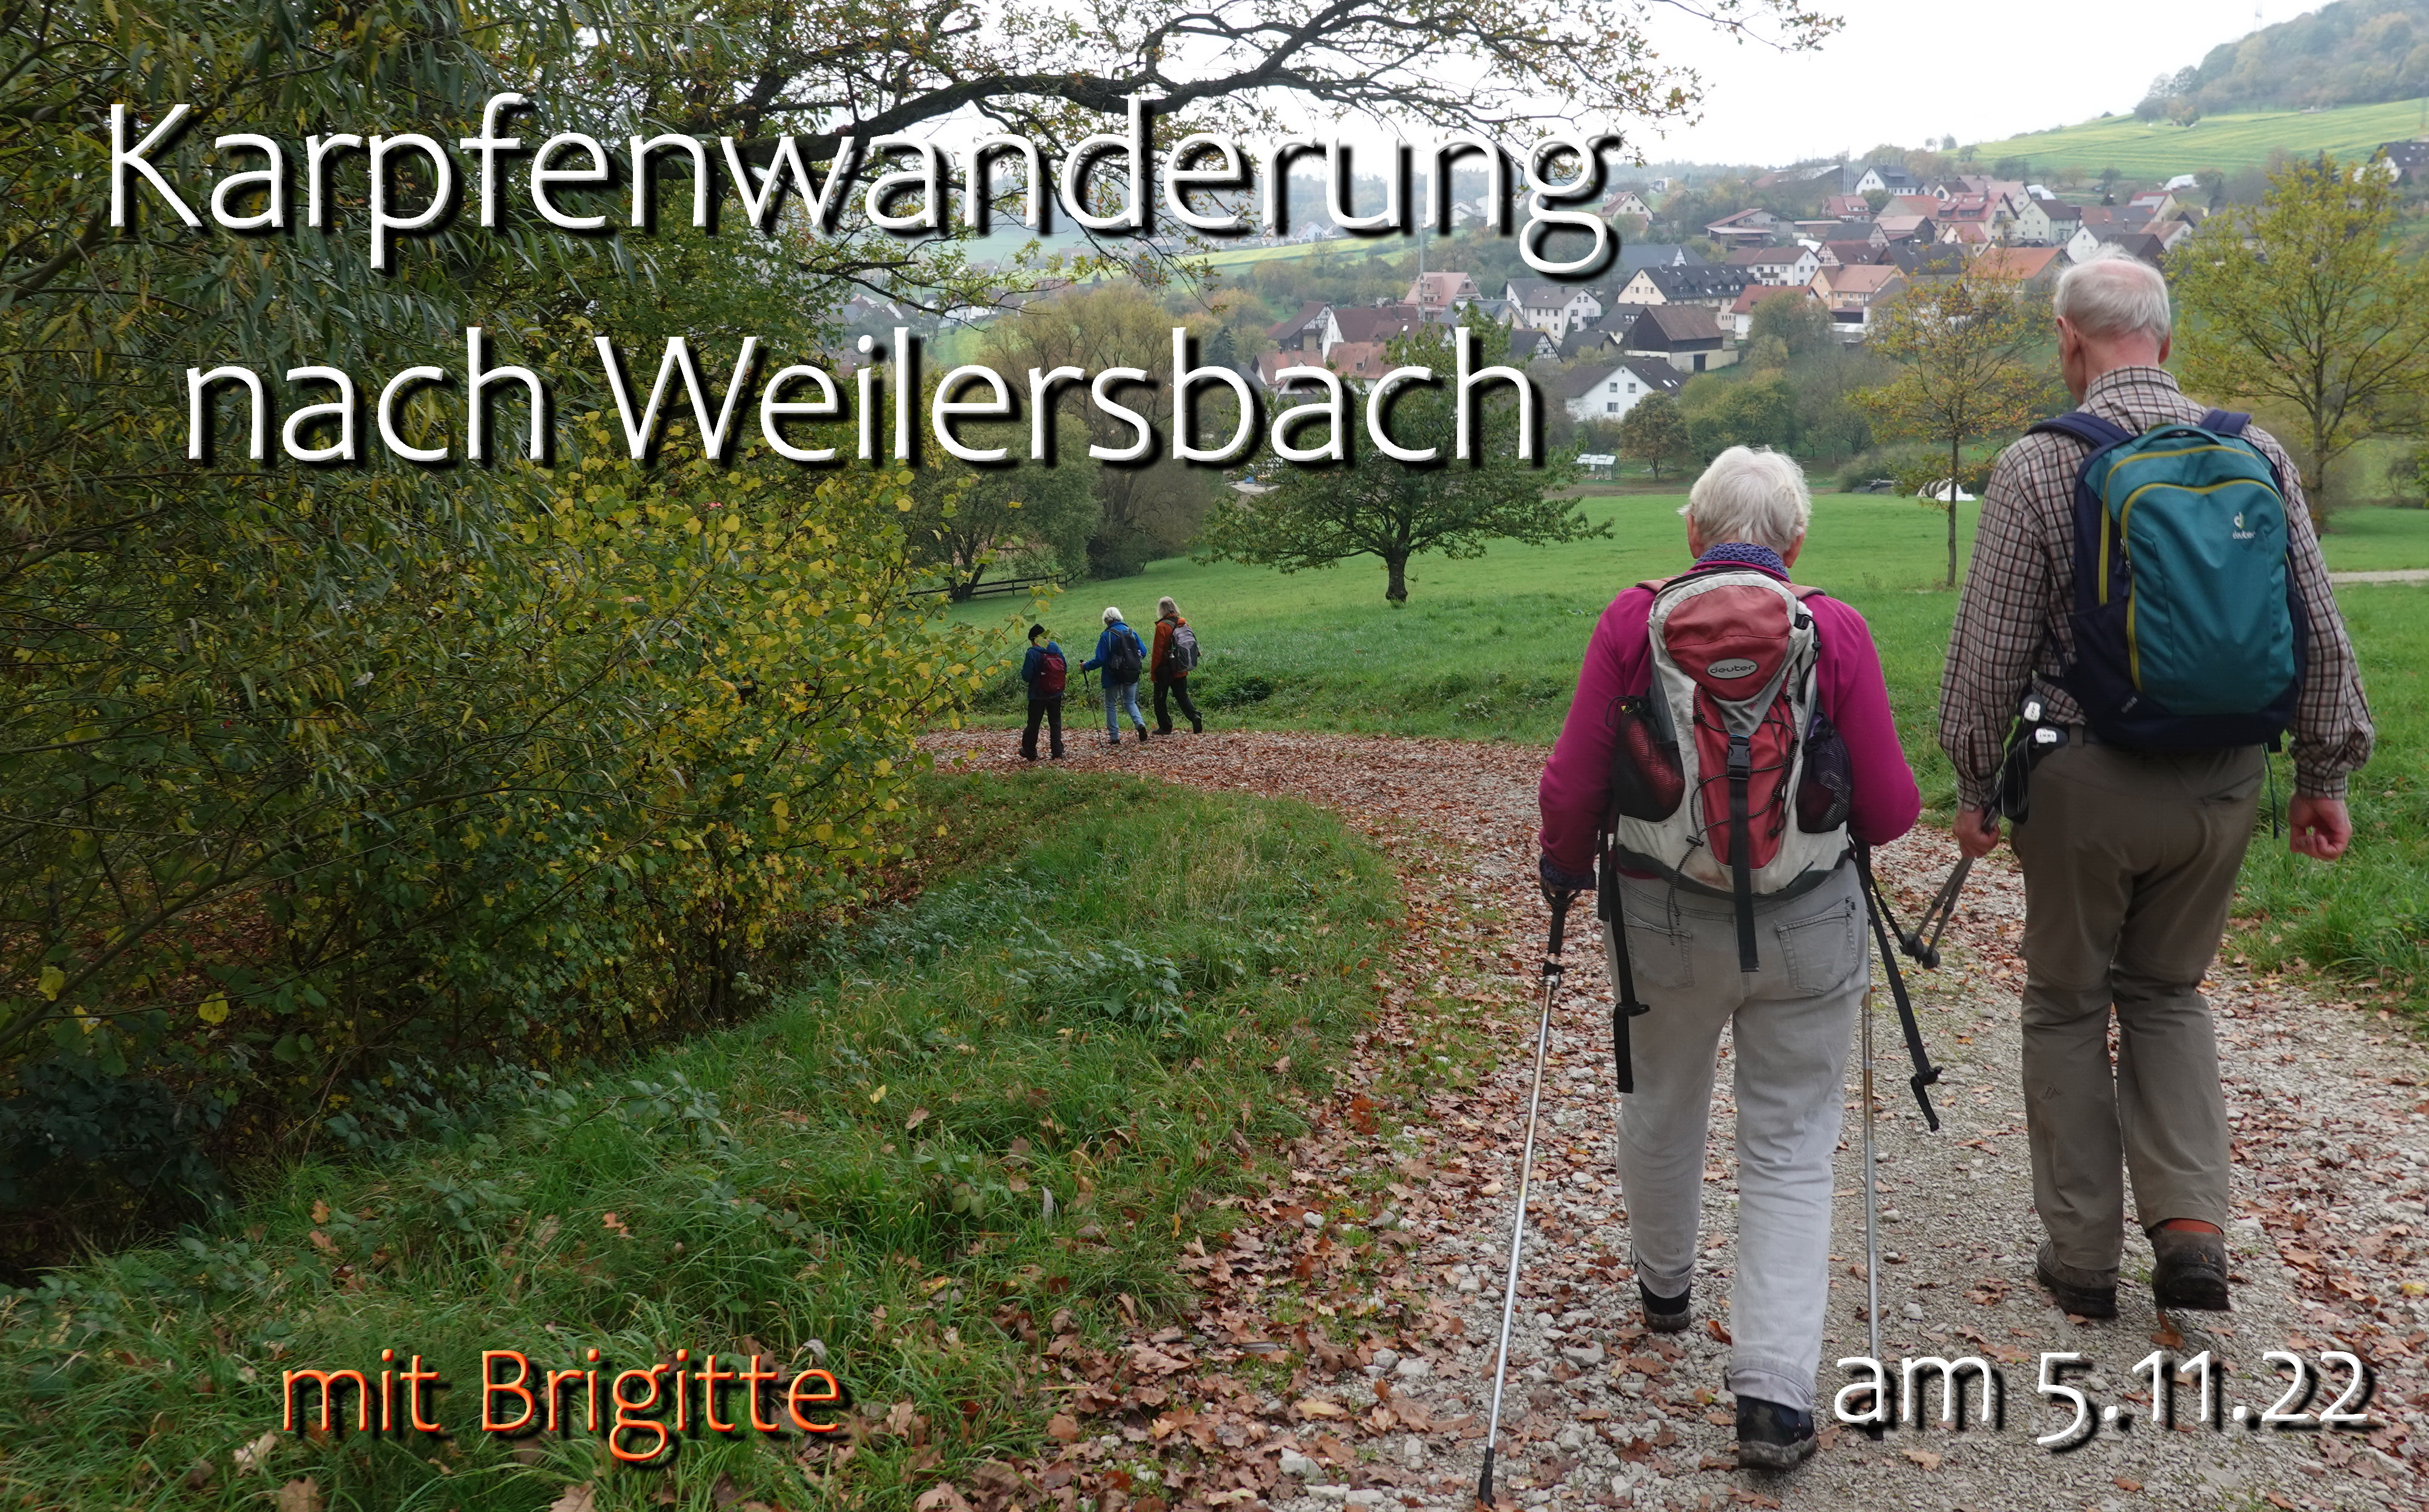 Karpfenwanderung nach Weilersbach mit Brigitte